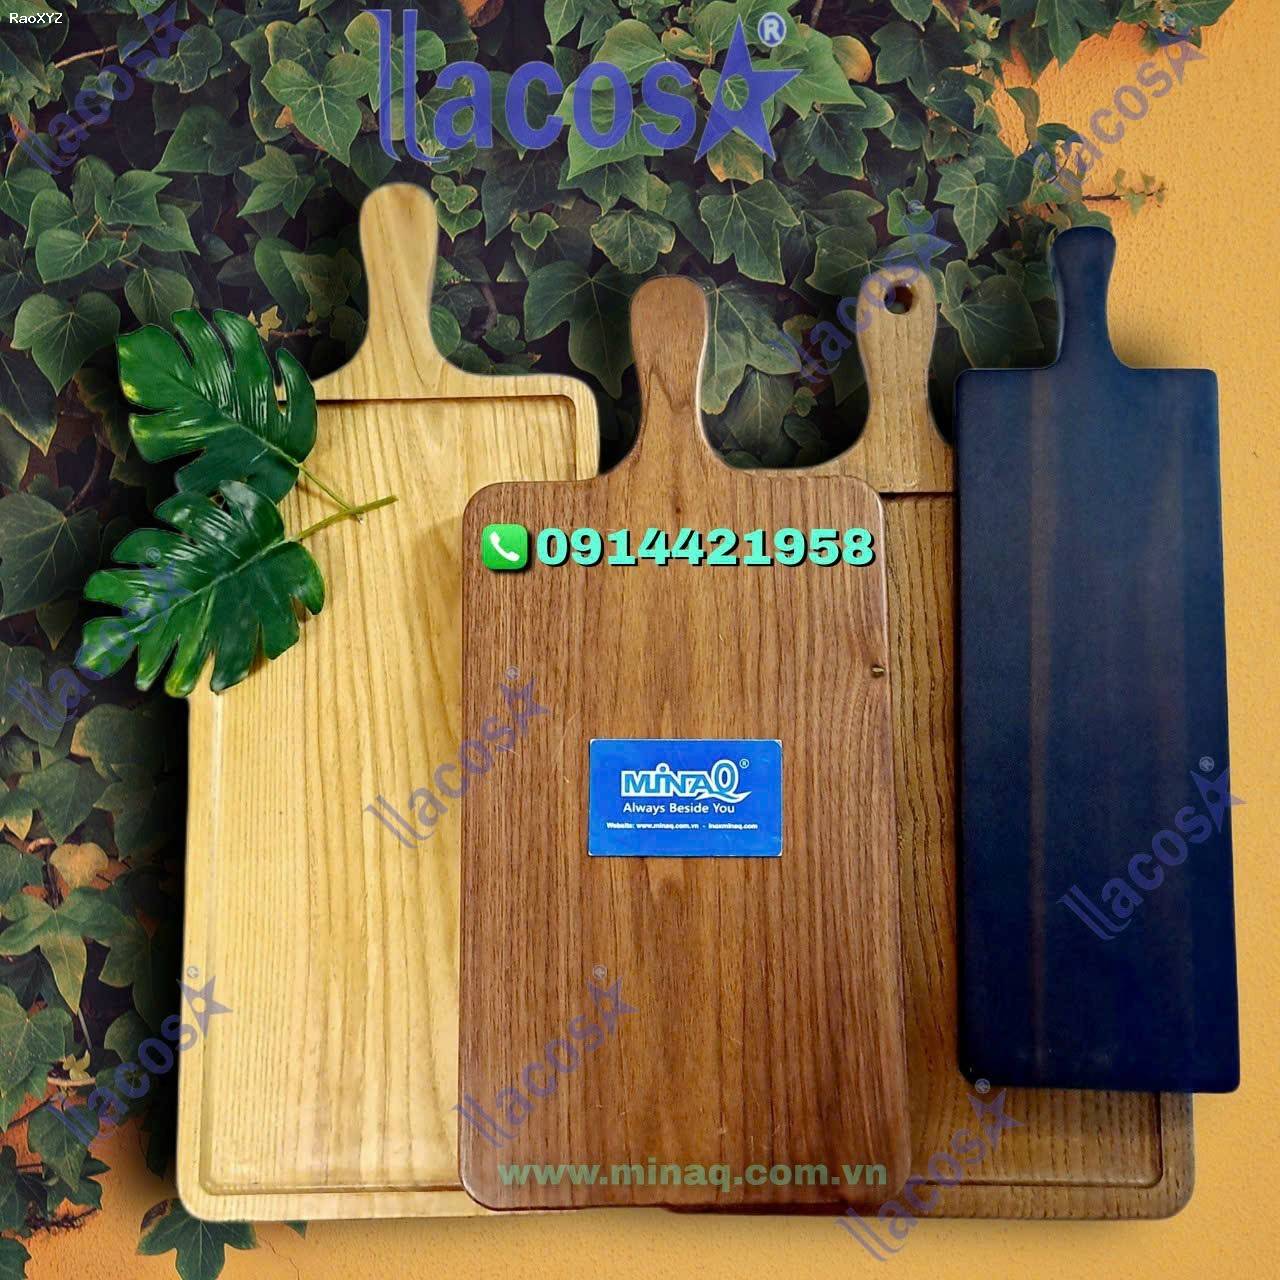 Lacosa chuyên cung cấp các vật dụng, dụng cụ bằng gỗ cao cấp